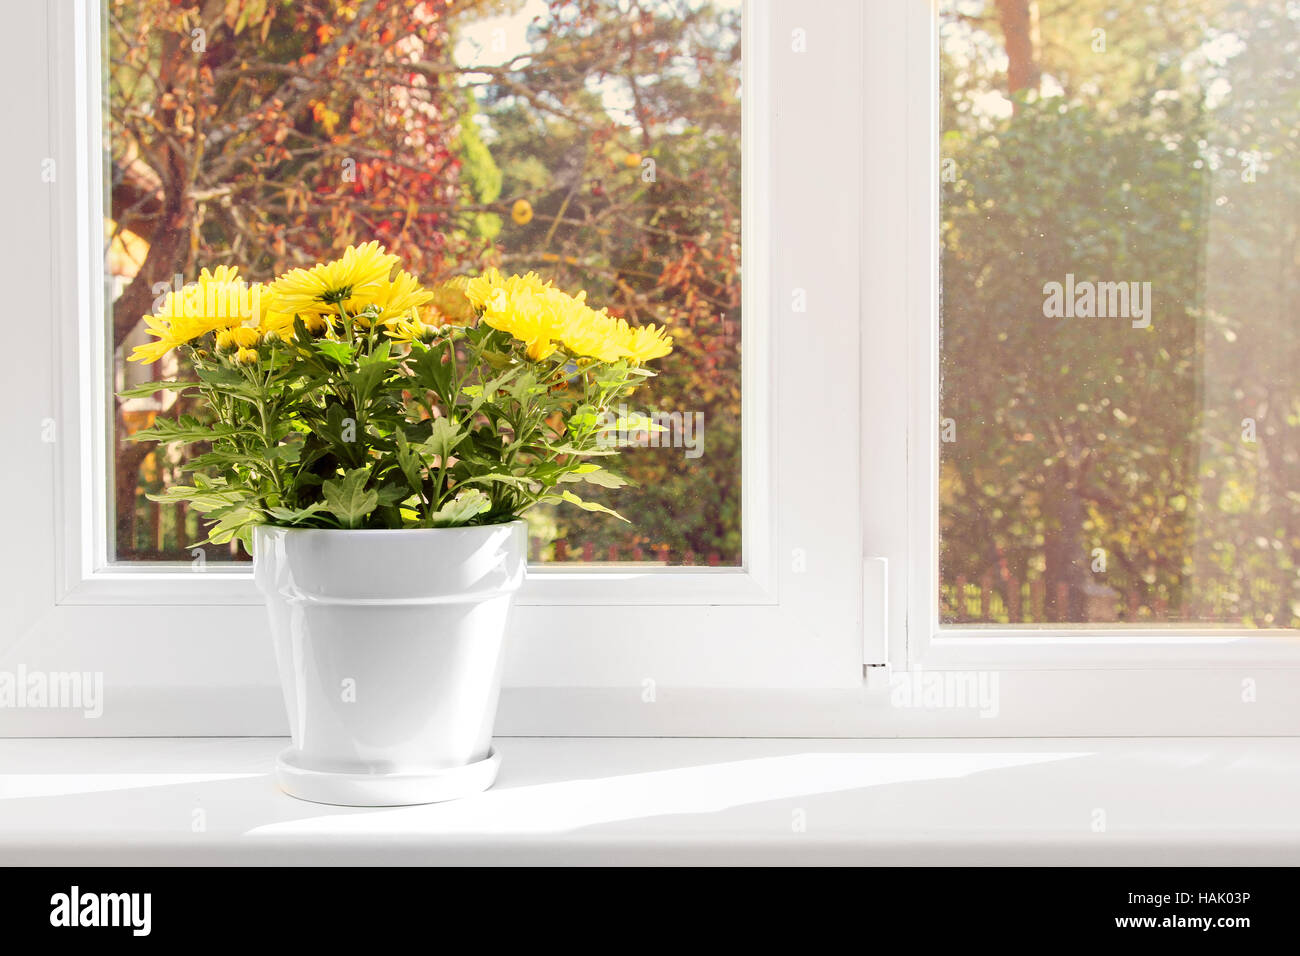 Vaso con crisantemo giallo sul davanzale Foto Stock